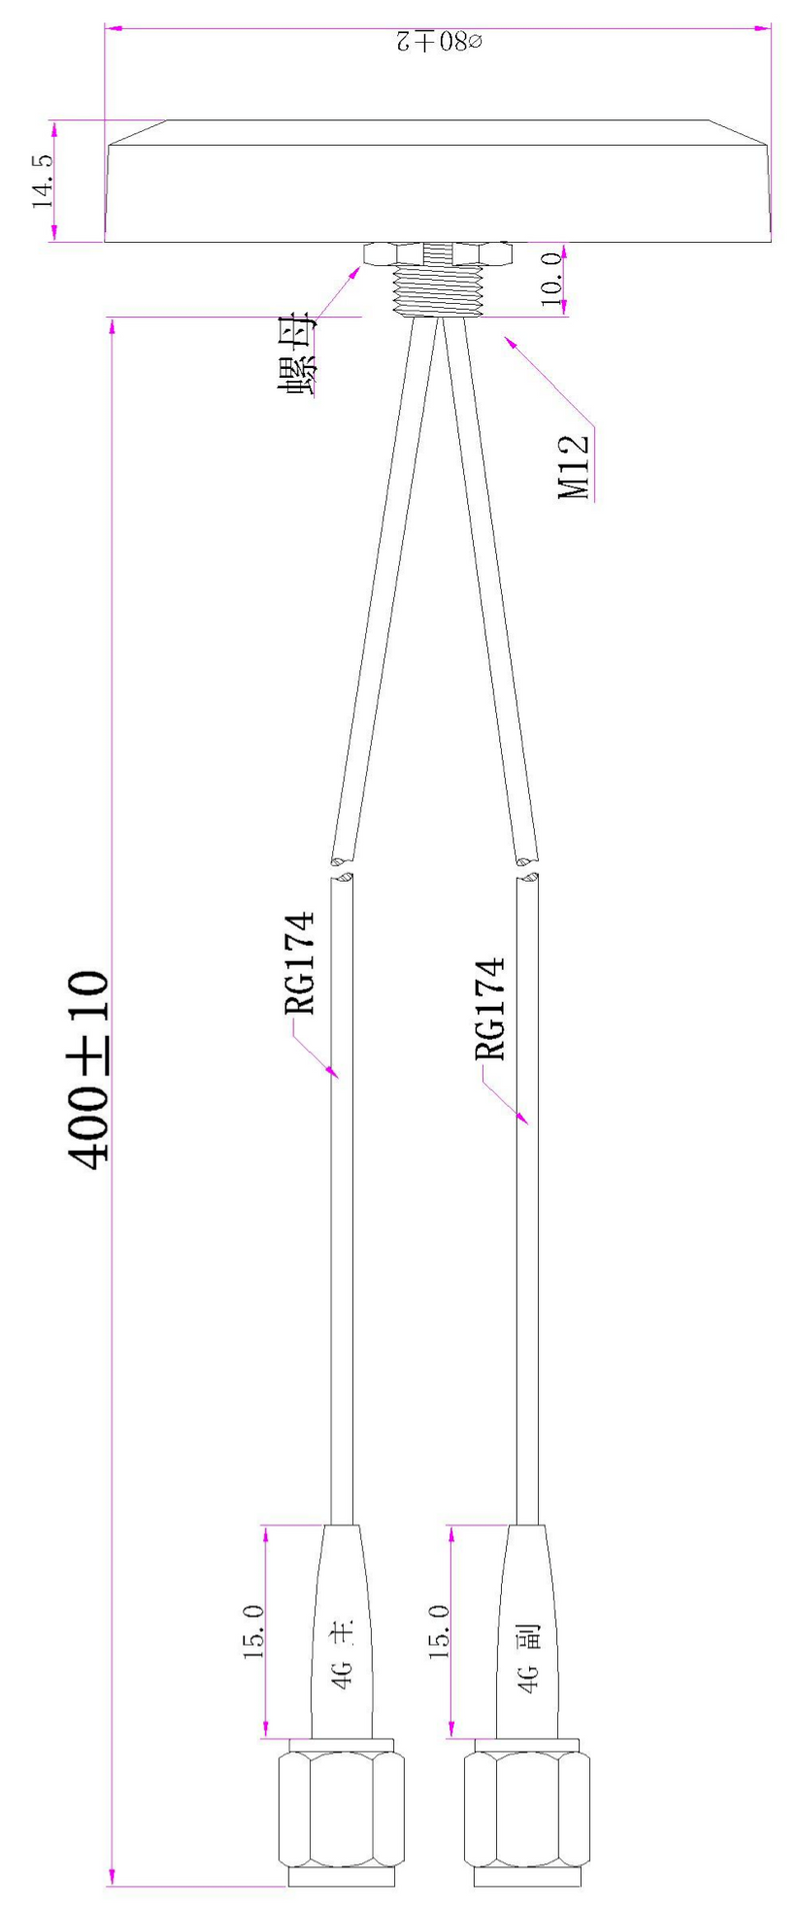 4G 蘑菇型天线，二合一（主天线 + 辅助天线），底部 40 厘米电缆